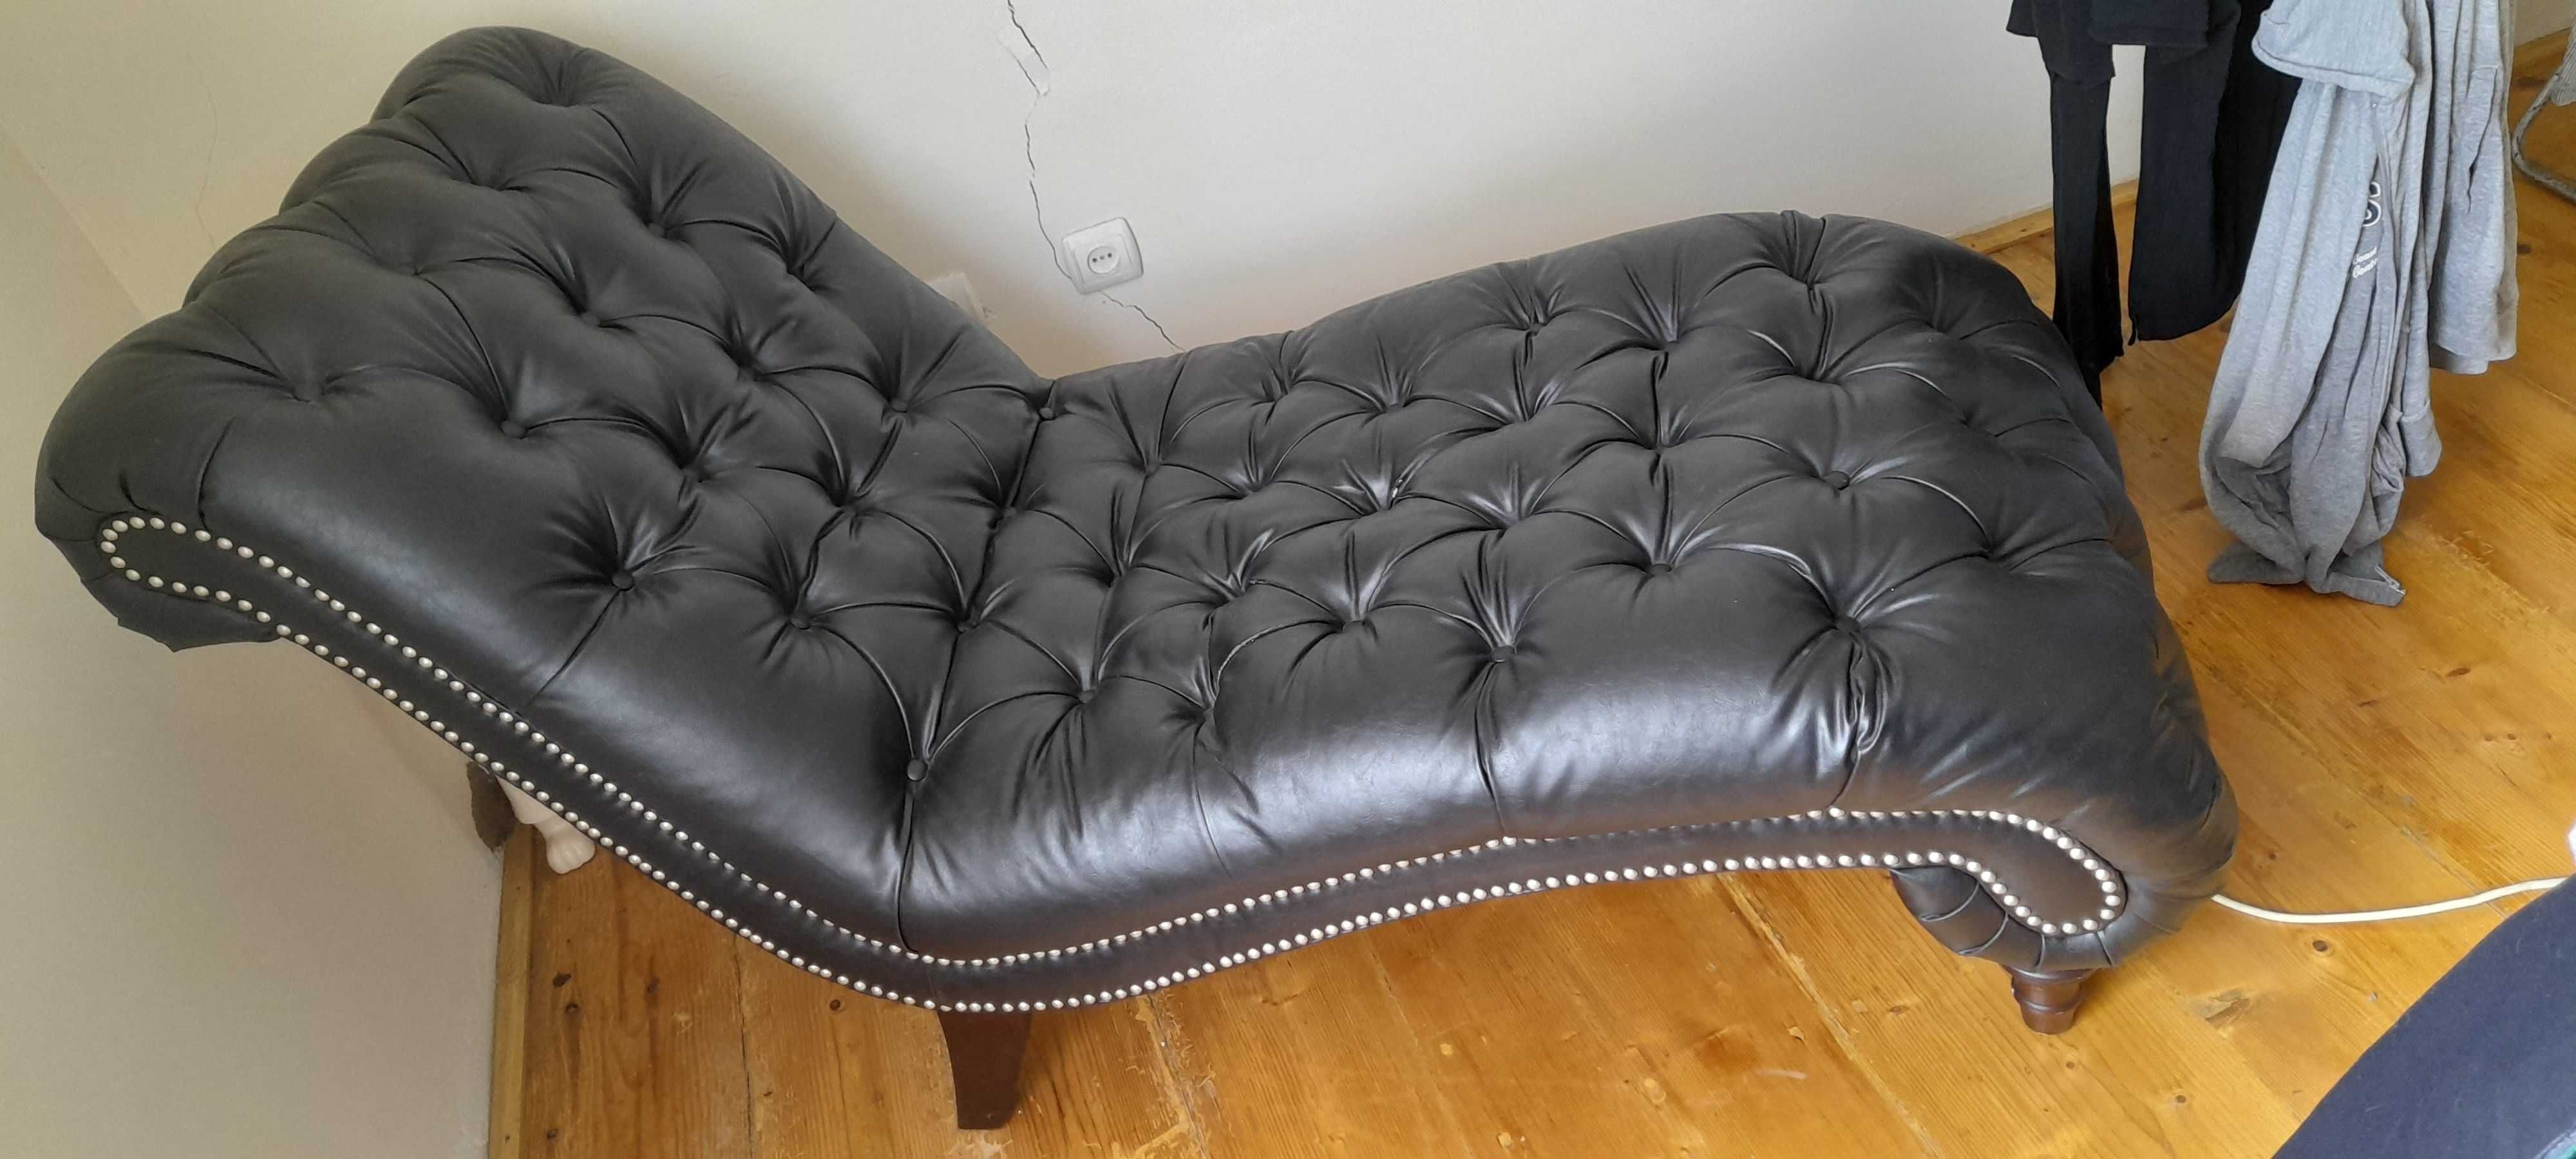 Vand sofa noua  din piele, model deosebit